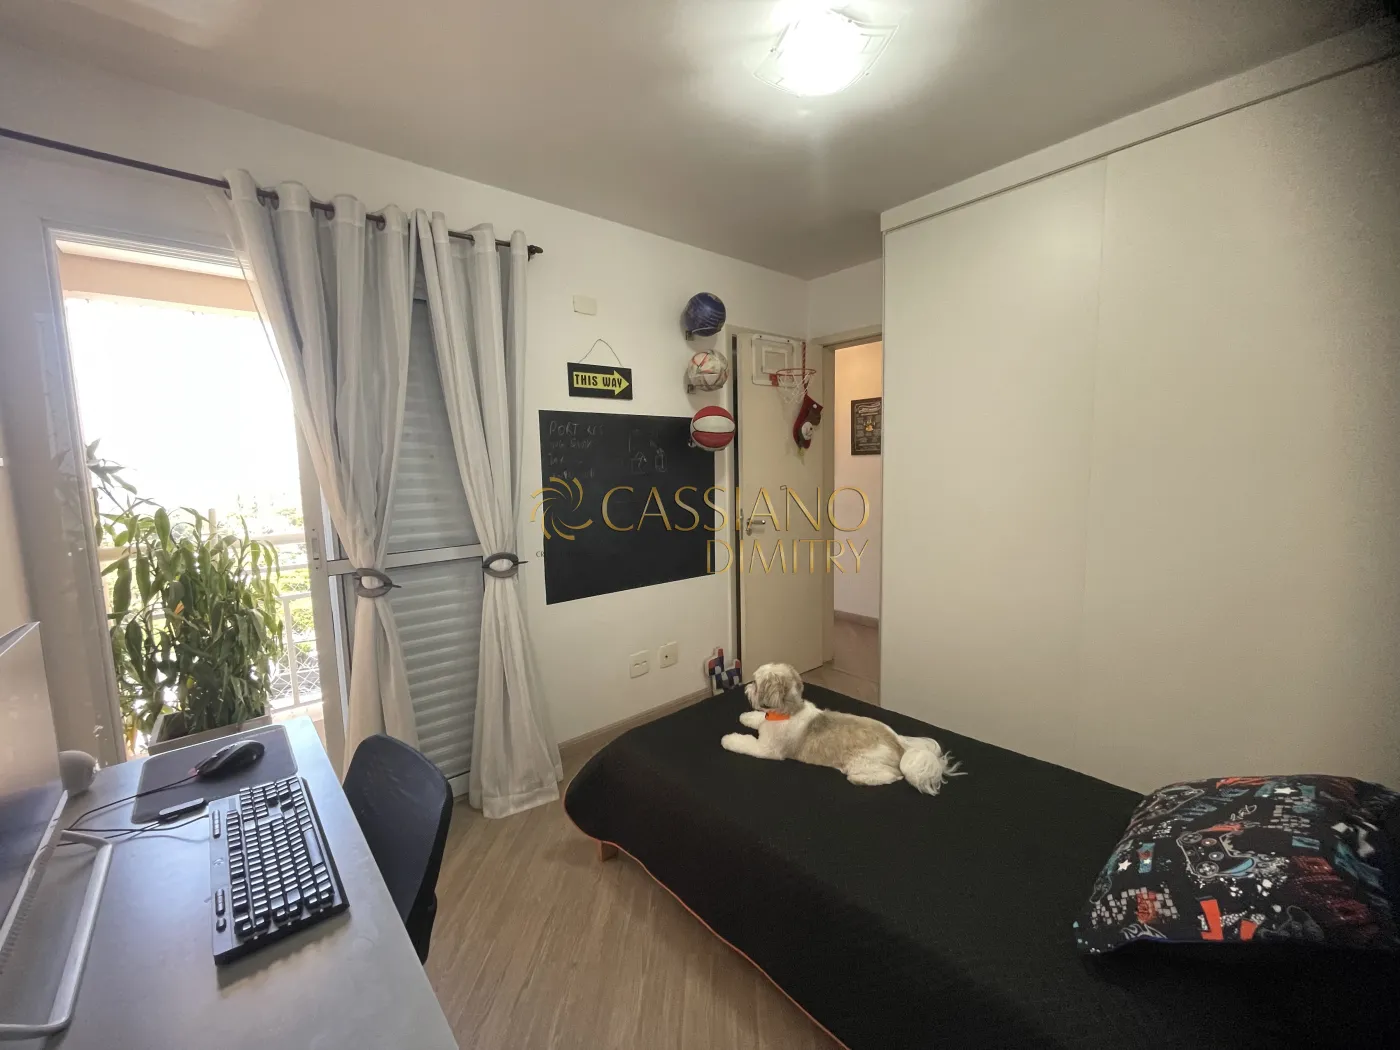 Alugar Apartamento / Padrão em São José dos Campos R$ 7.500,00 - Foto 16